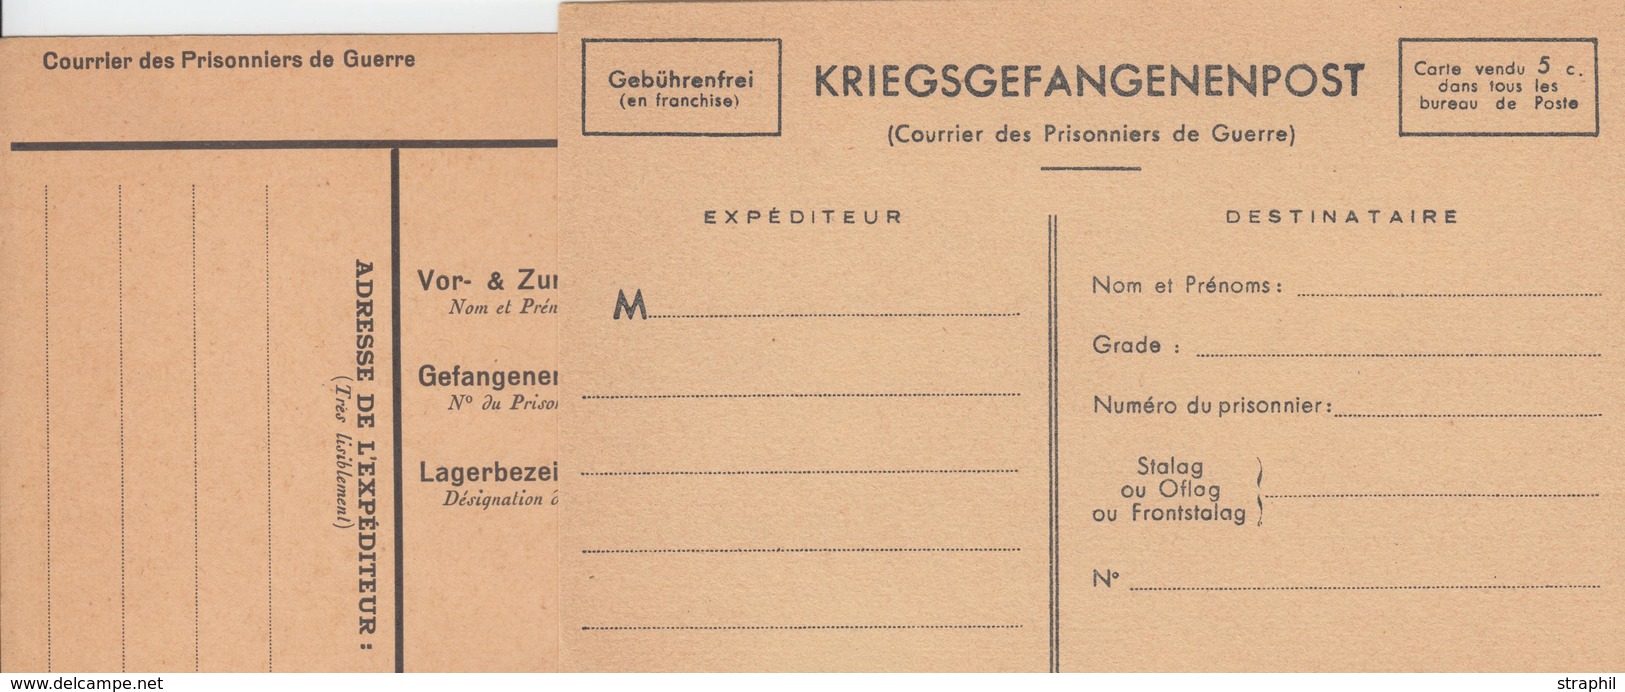 CP 2 Cartes Vierges De Courrier De Prisonniers De Guerre - 1940 - TB - Covers & Documents